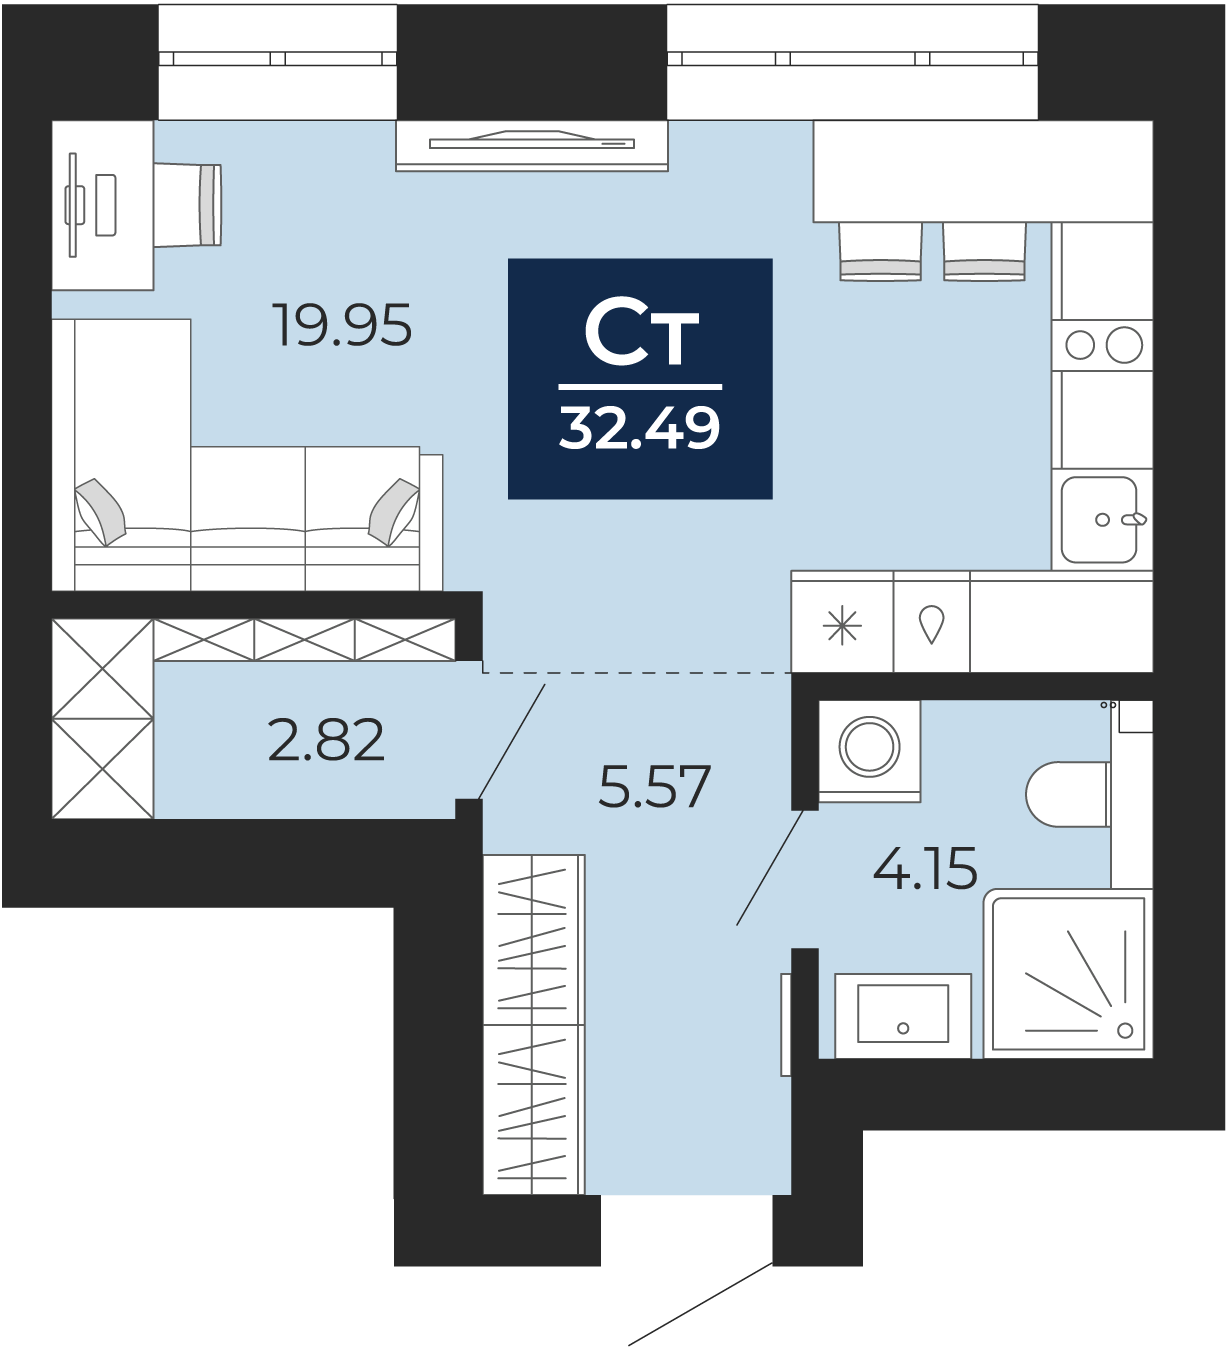 Квартира № 47, Студия, 32.49 кв. м, 8 этаж